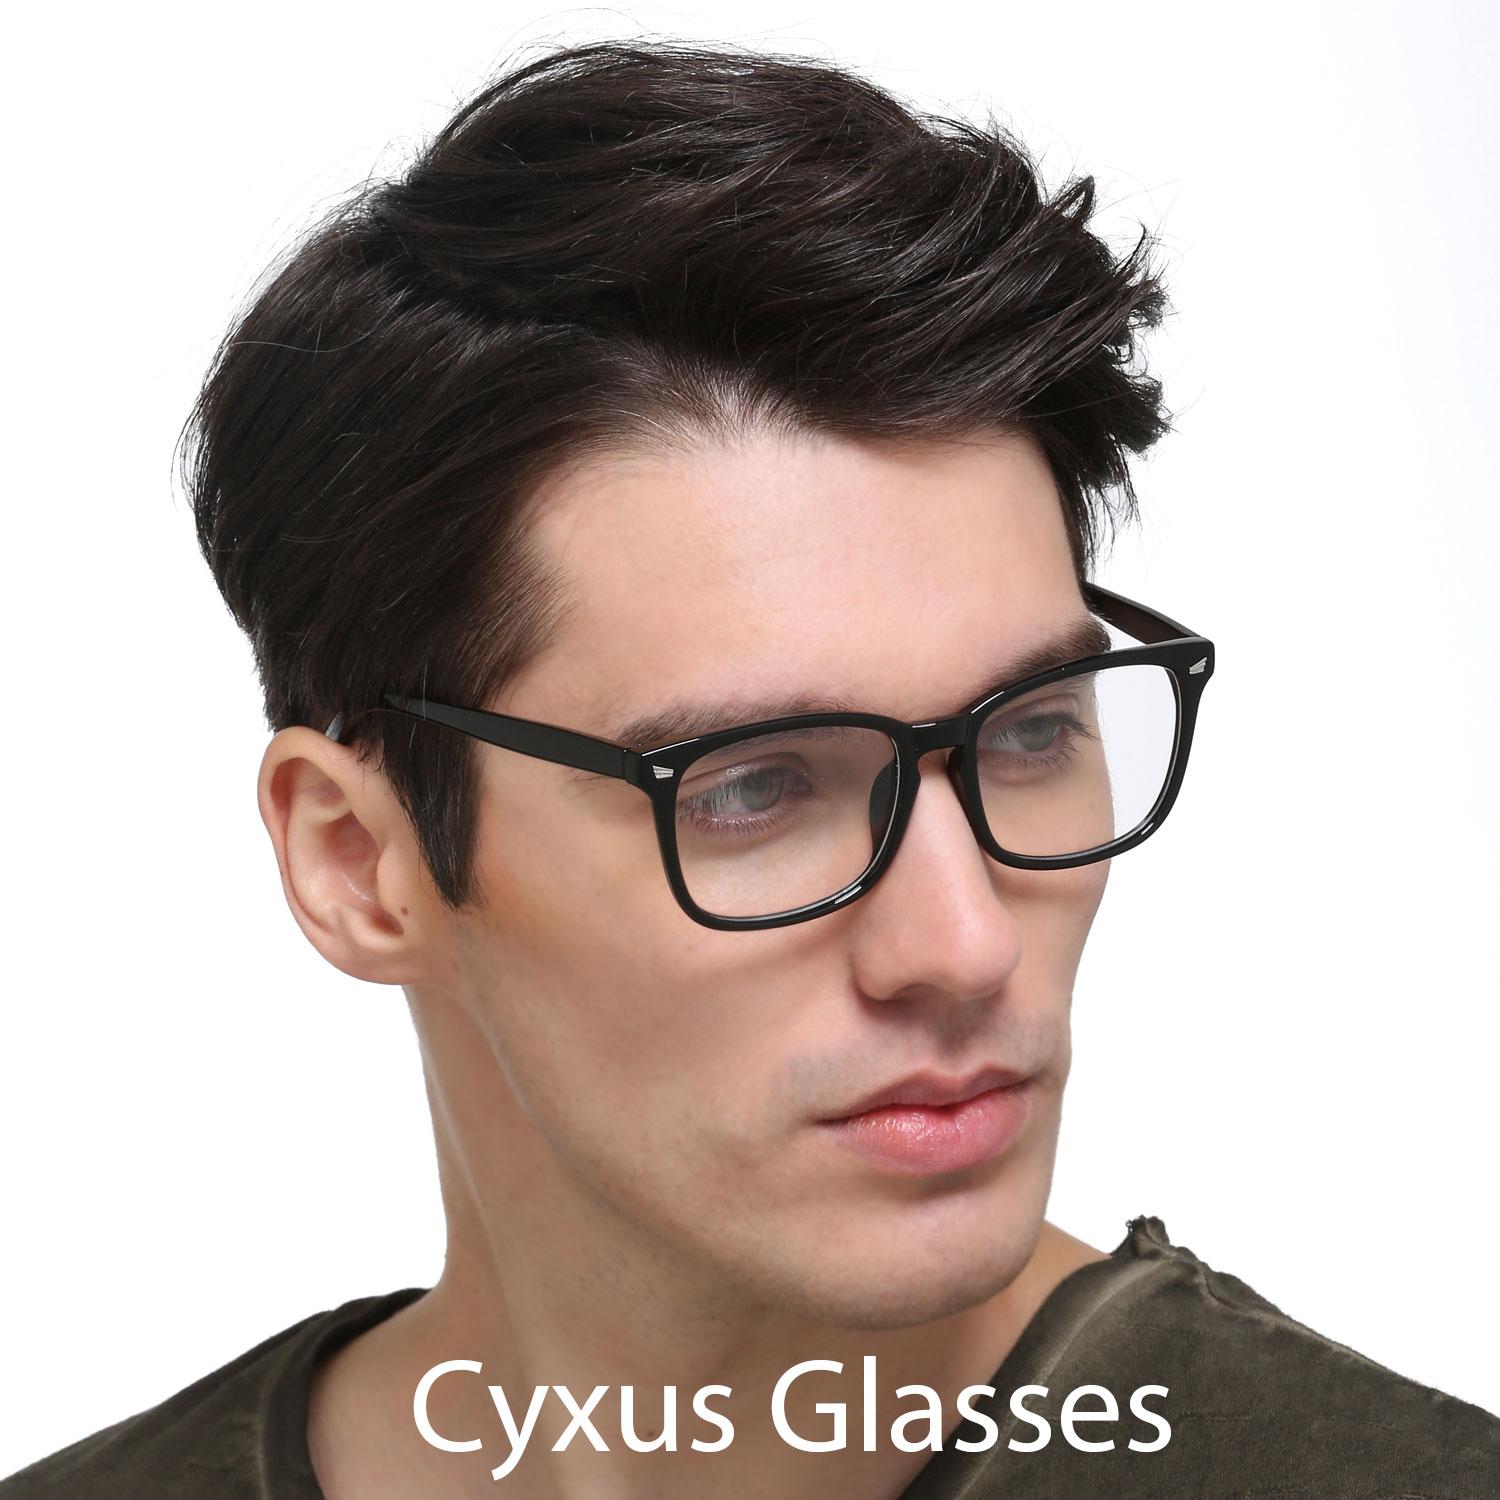 Gaming Glasses for Women Man Anti Eye Eyestrain Unisex Blue Light Blocking Glasses Blue Filter Computer Glasses 